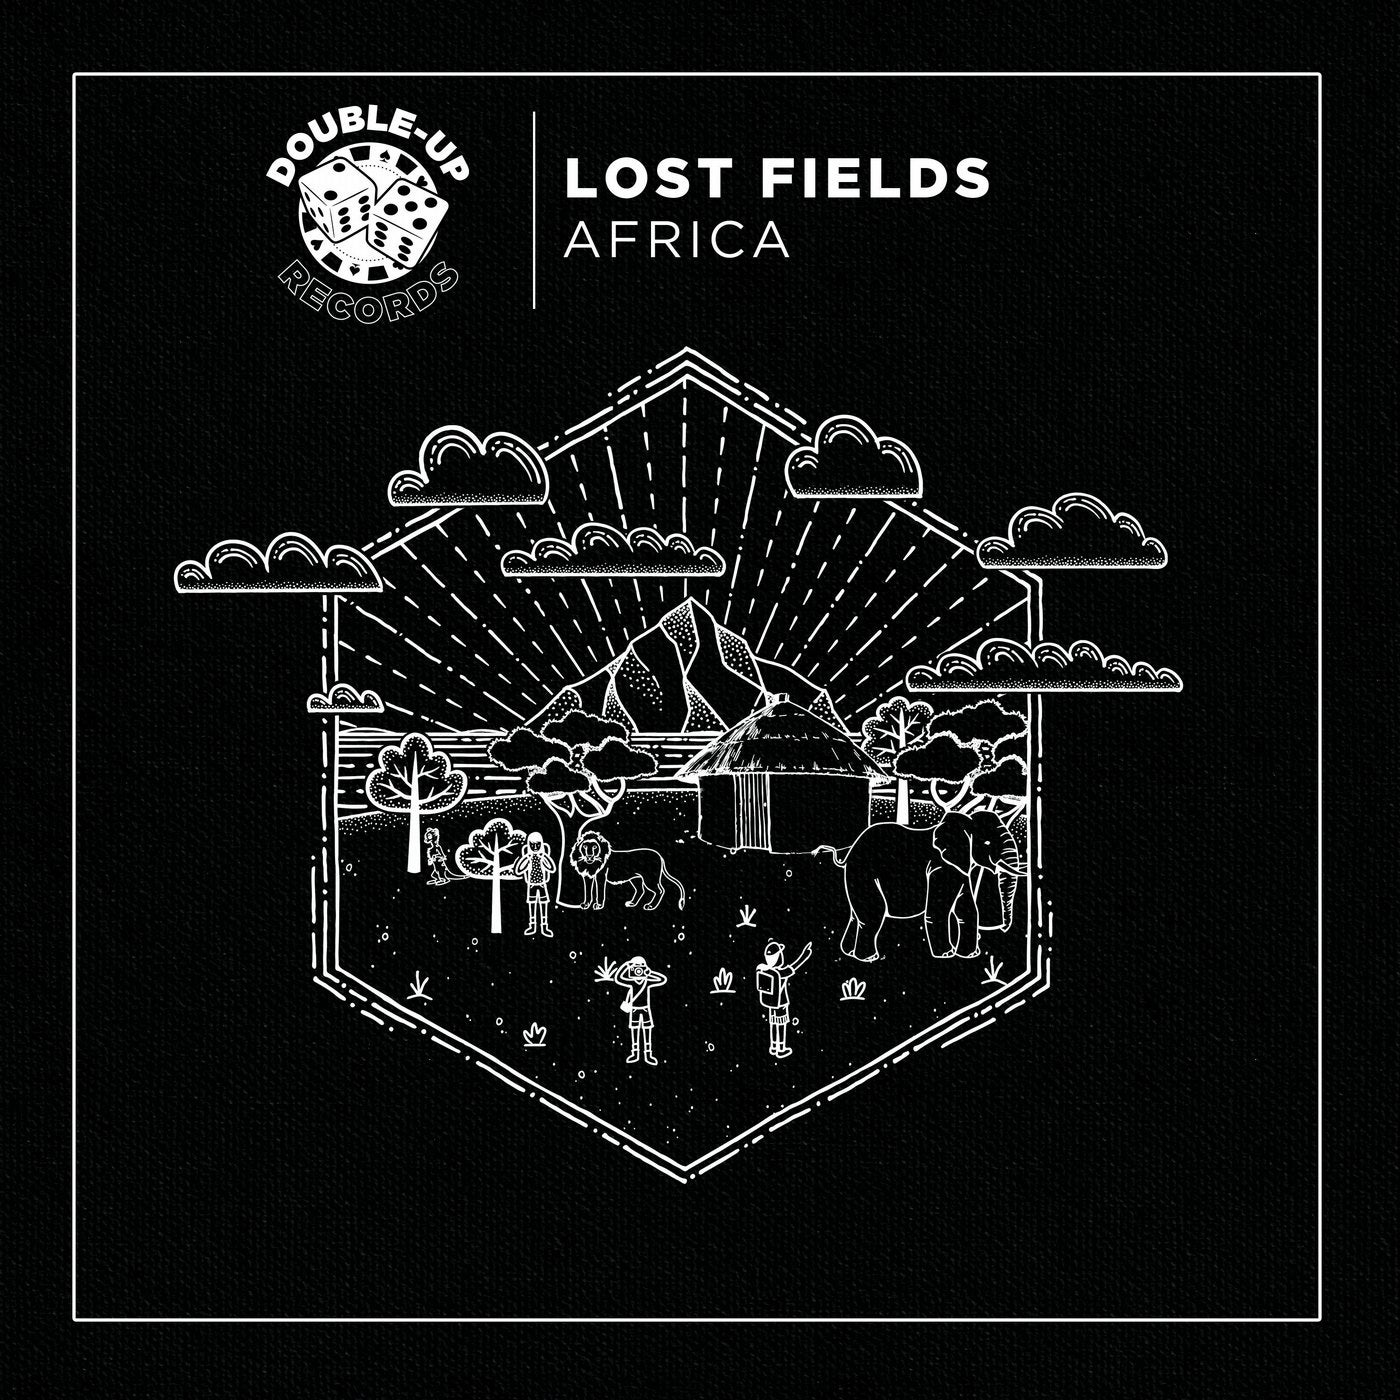 Africa (Remixes)